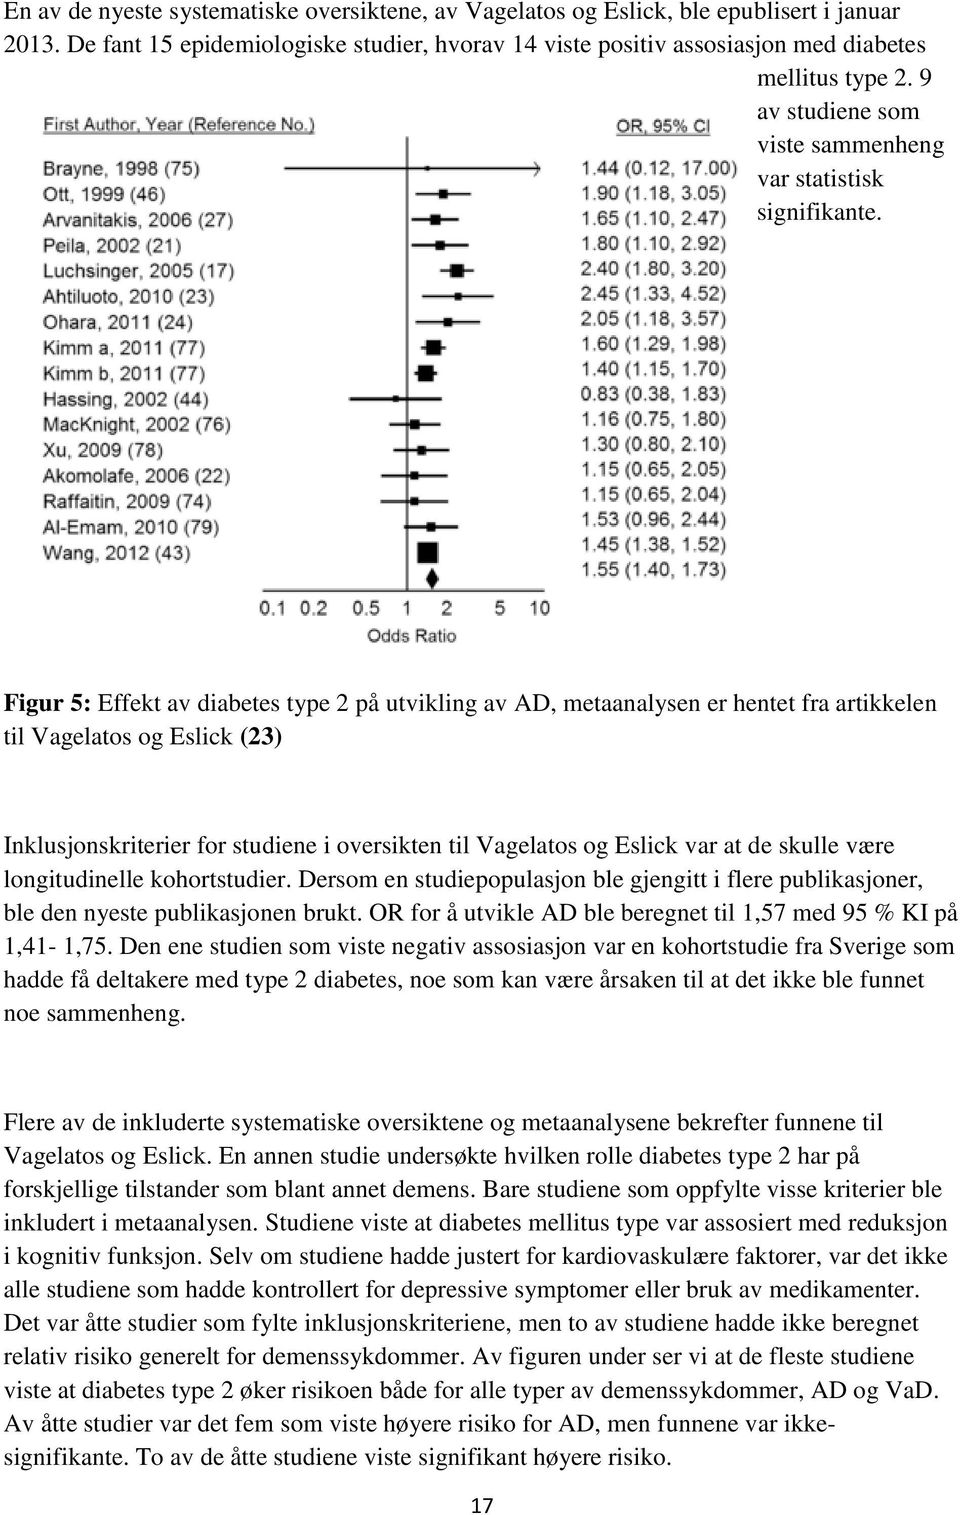 Figur 5: Effekt av diabetes type 2 på utvikling av AD, metaanalysen er hentet fra artikkelen til Vagelatos og Eslick (23) Inklusjonskriterier for studiene i oversikten til Vagelatos og Eslick var at